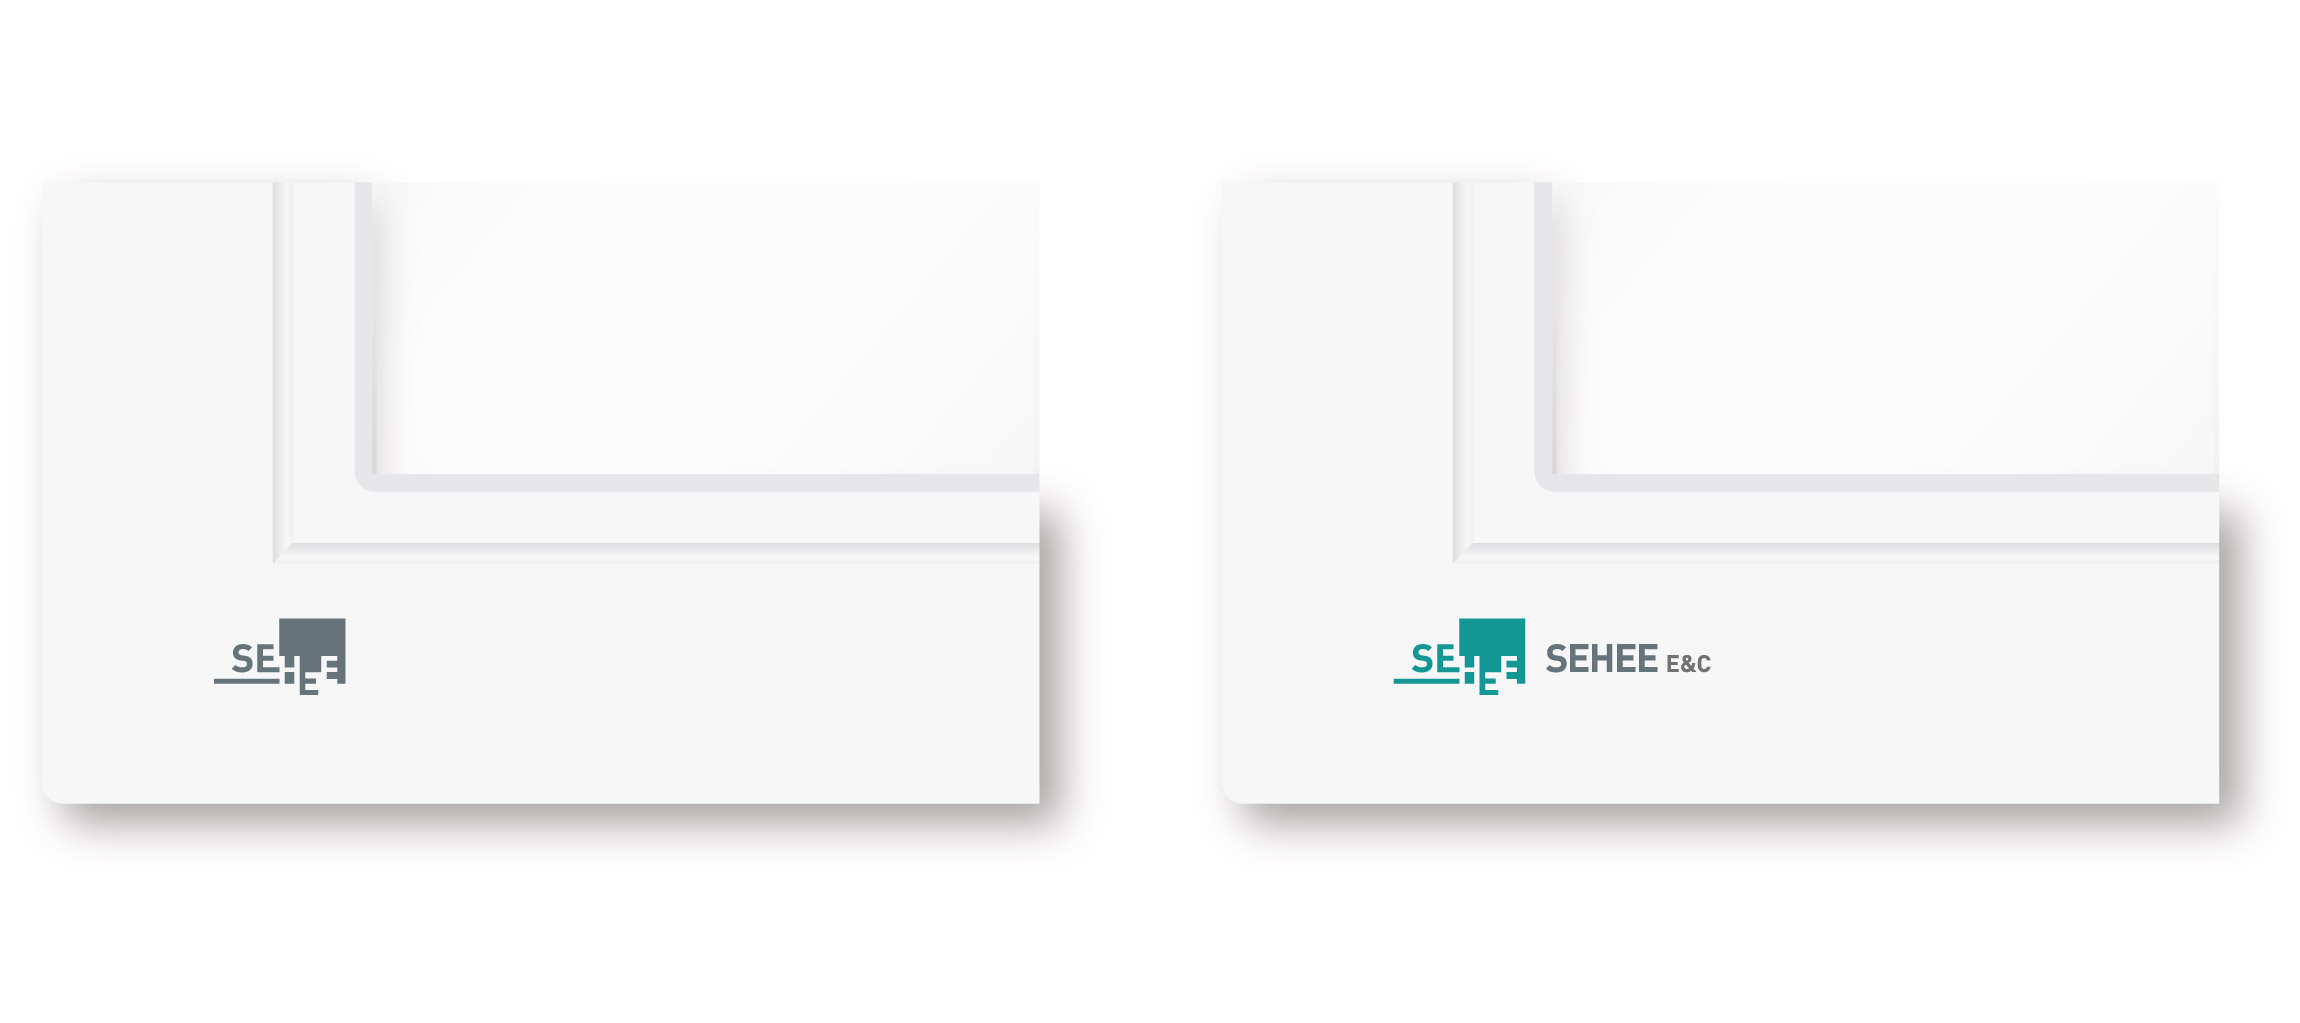 SEHEE Sehee E&C Branding & Identity sehee-id-3.jpg